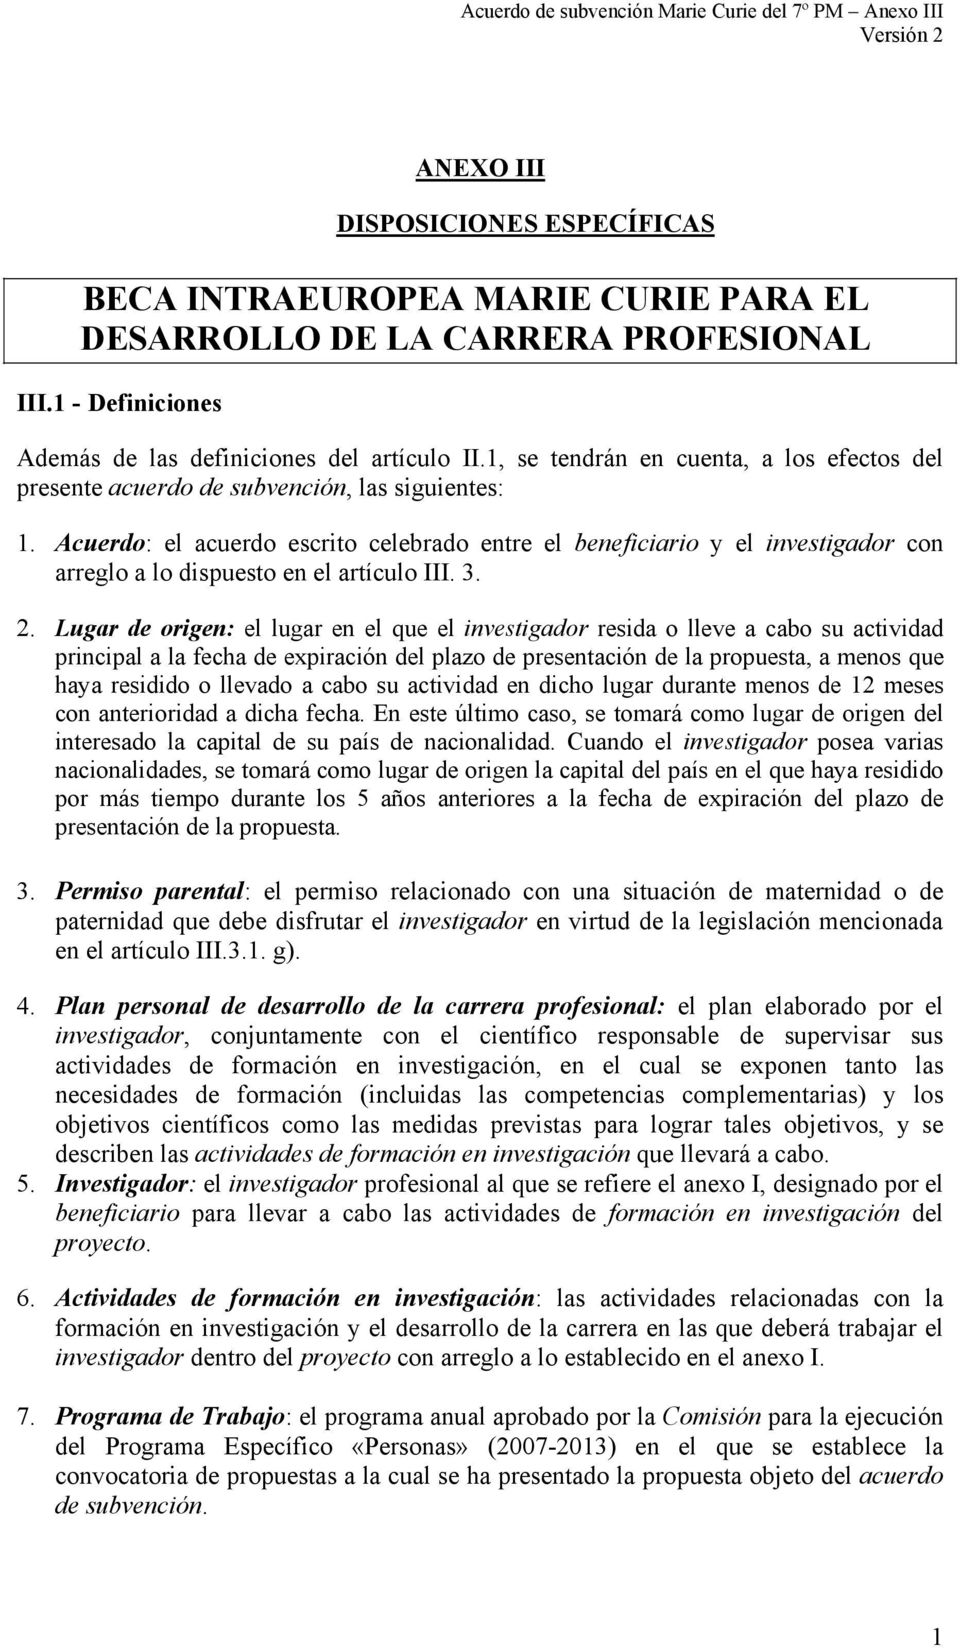 Acuerdo: el acuerdo escrito celebrado entre el beneficiario y el investigador con arreglo a lo dispuesto en el artículo III. 3. 2.